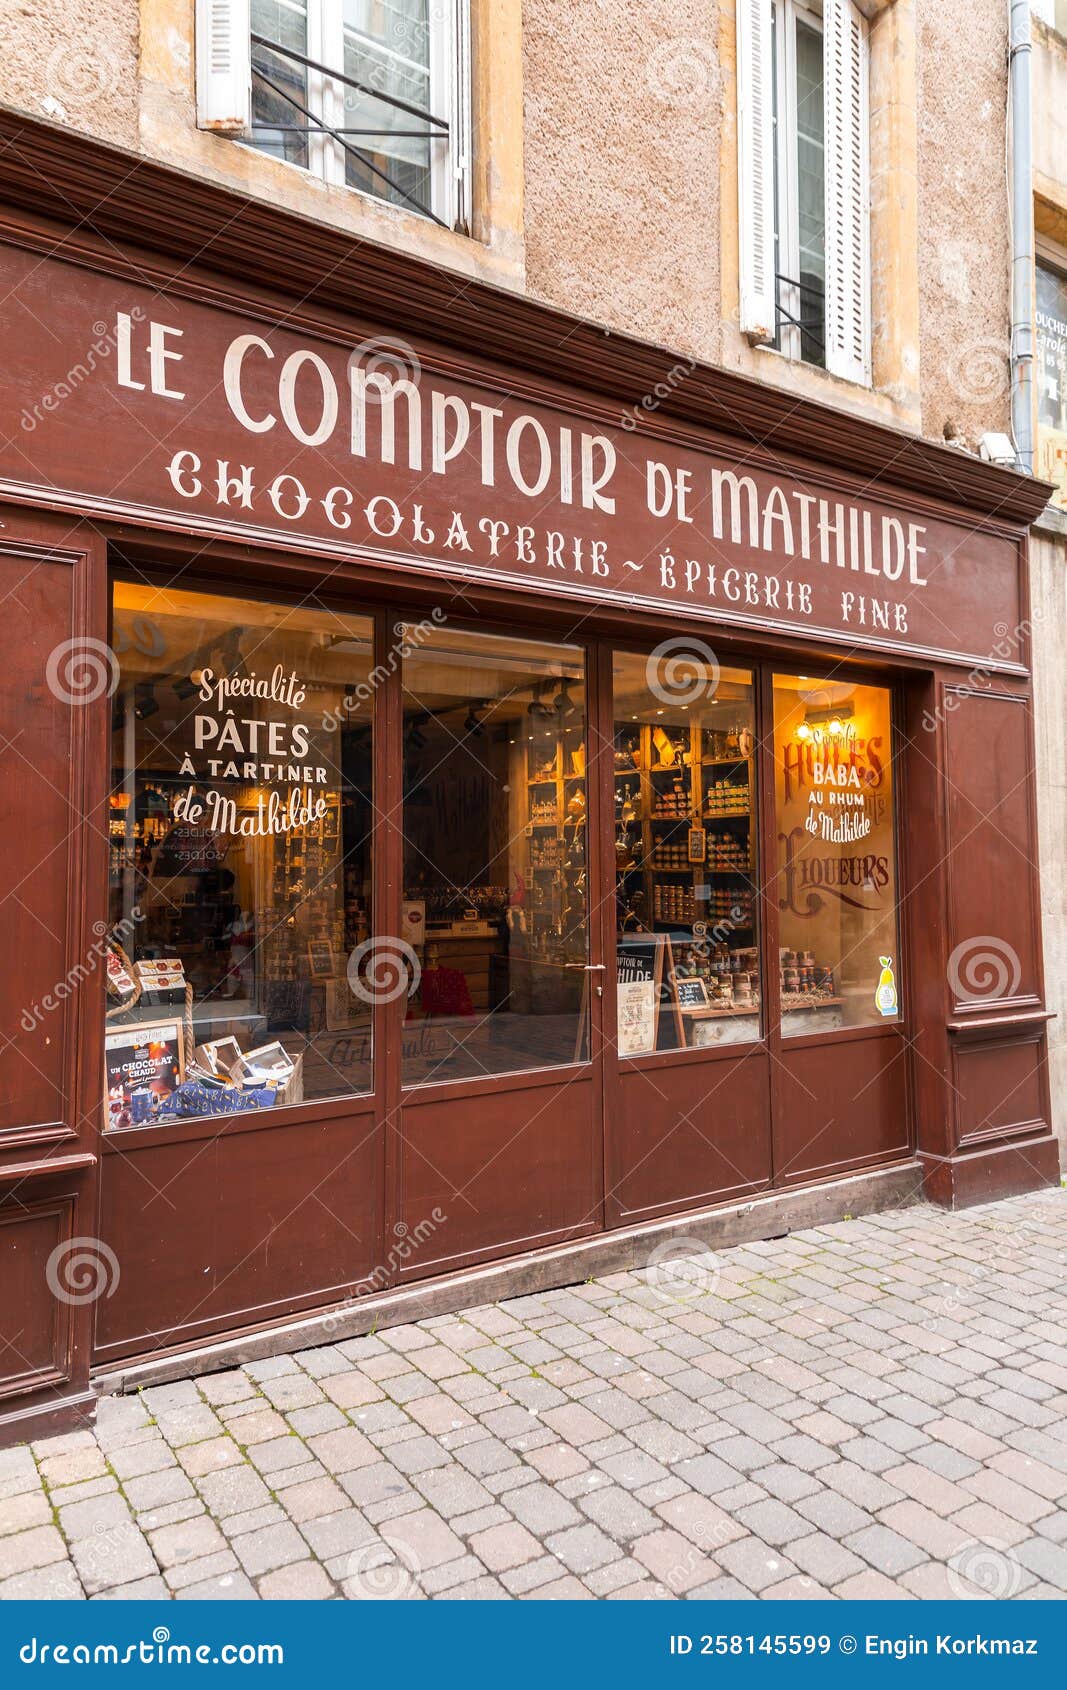 Le comptoir de Mathilde - Producteurs et commercants en Anjou